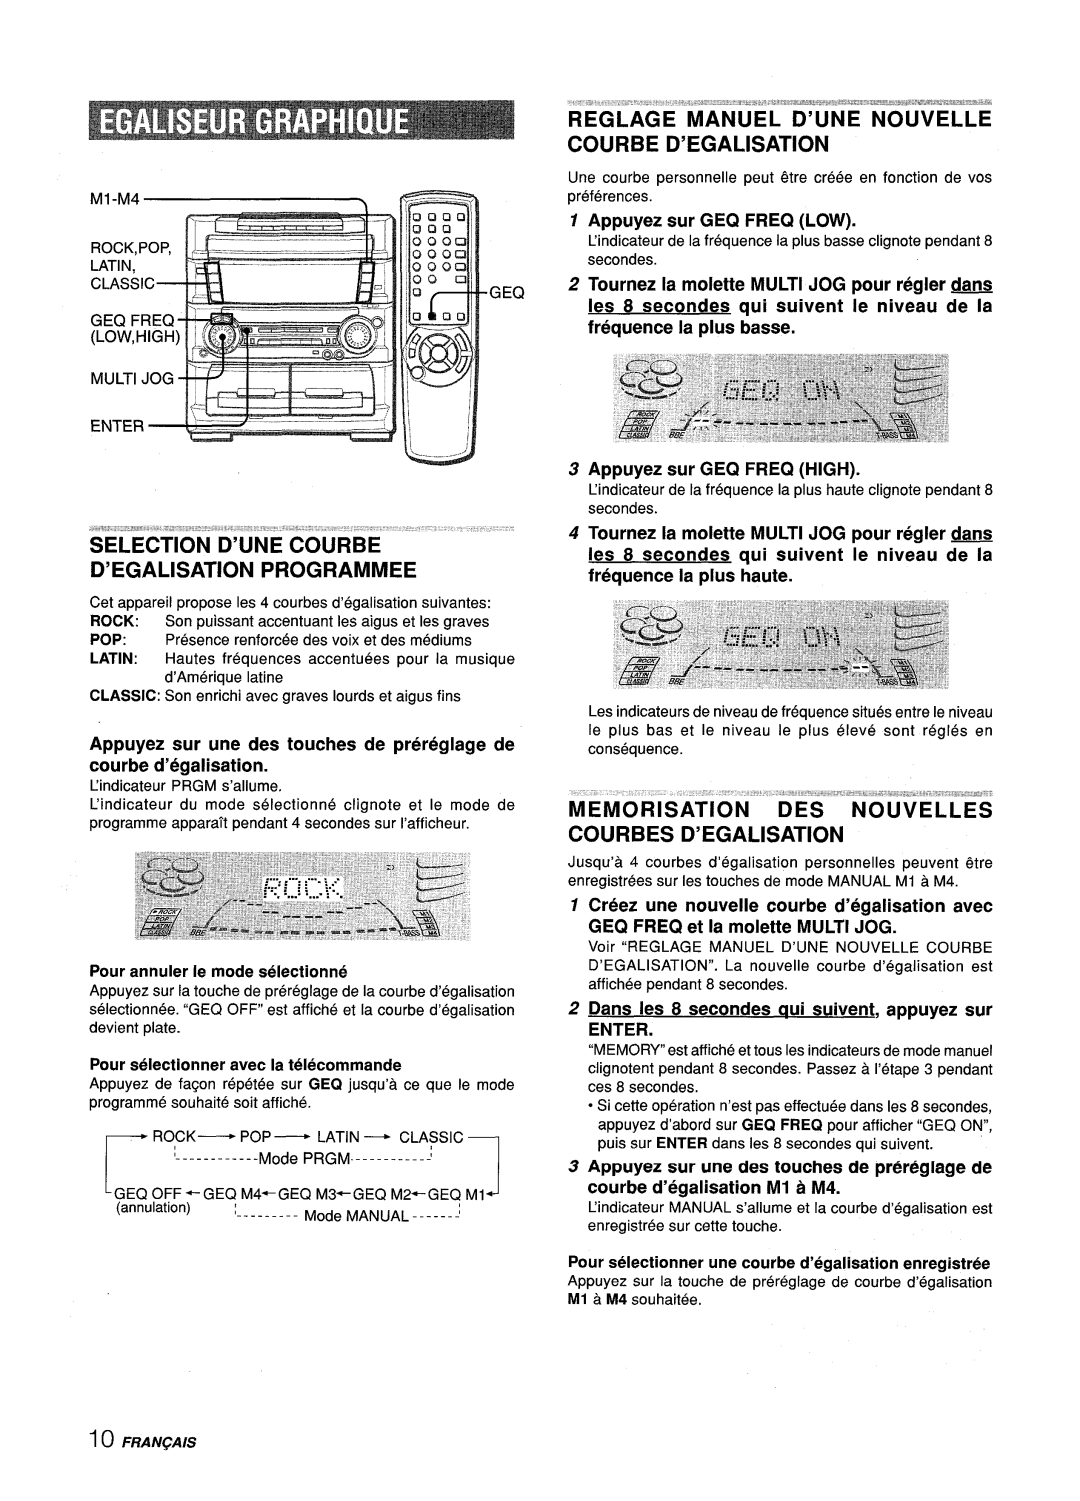 Aiwa Z-L70 manual Programmed, Reglage Manuel D’Une Nouvelle Courbe D’Egalisation, Appuyez sur GEQ FREQ LOW 